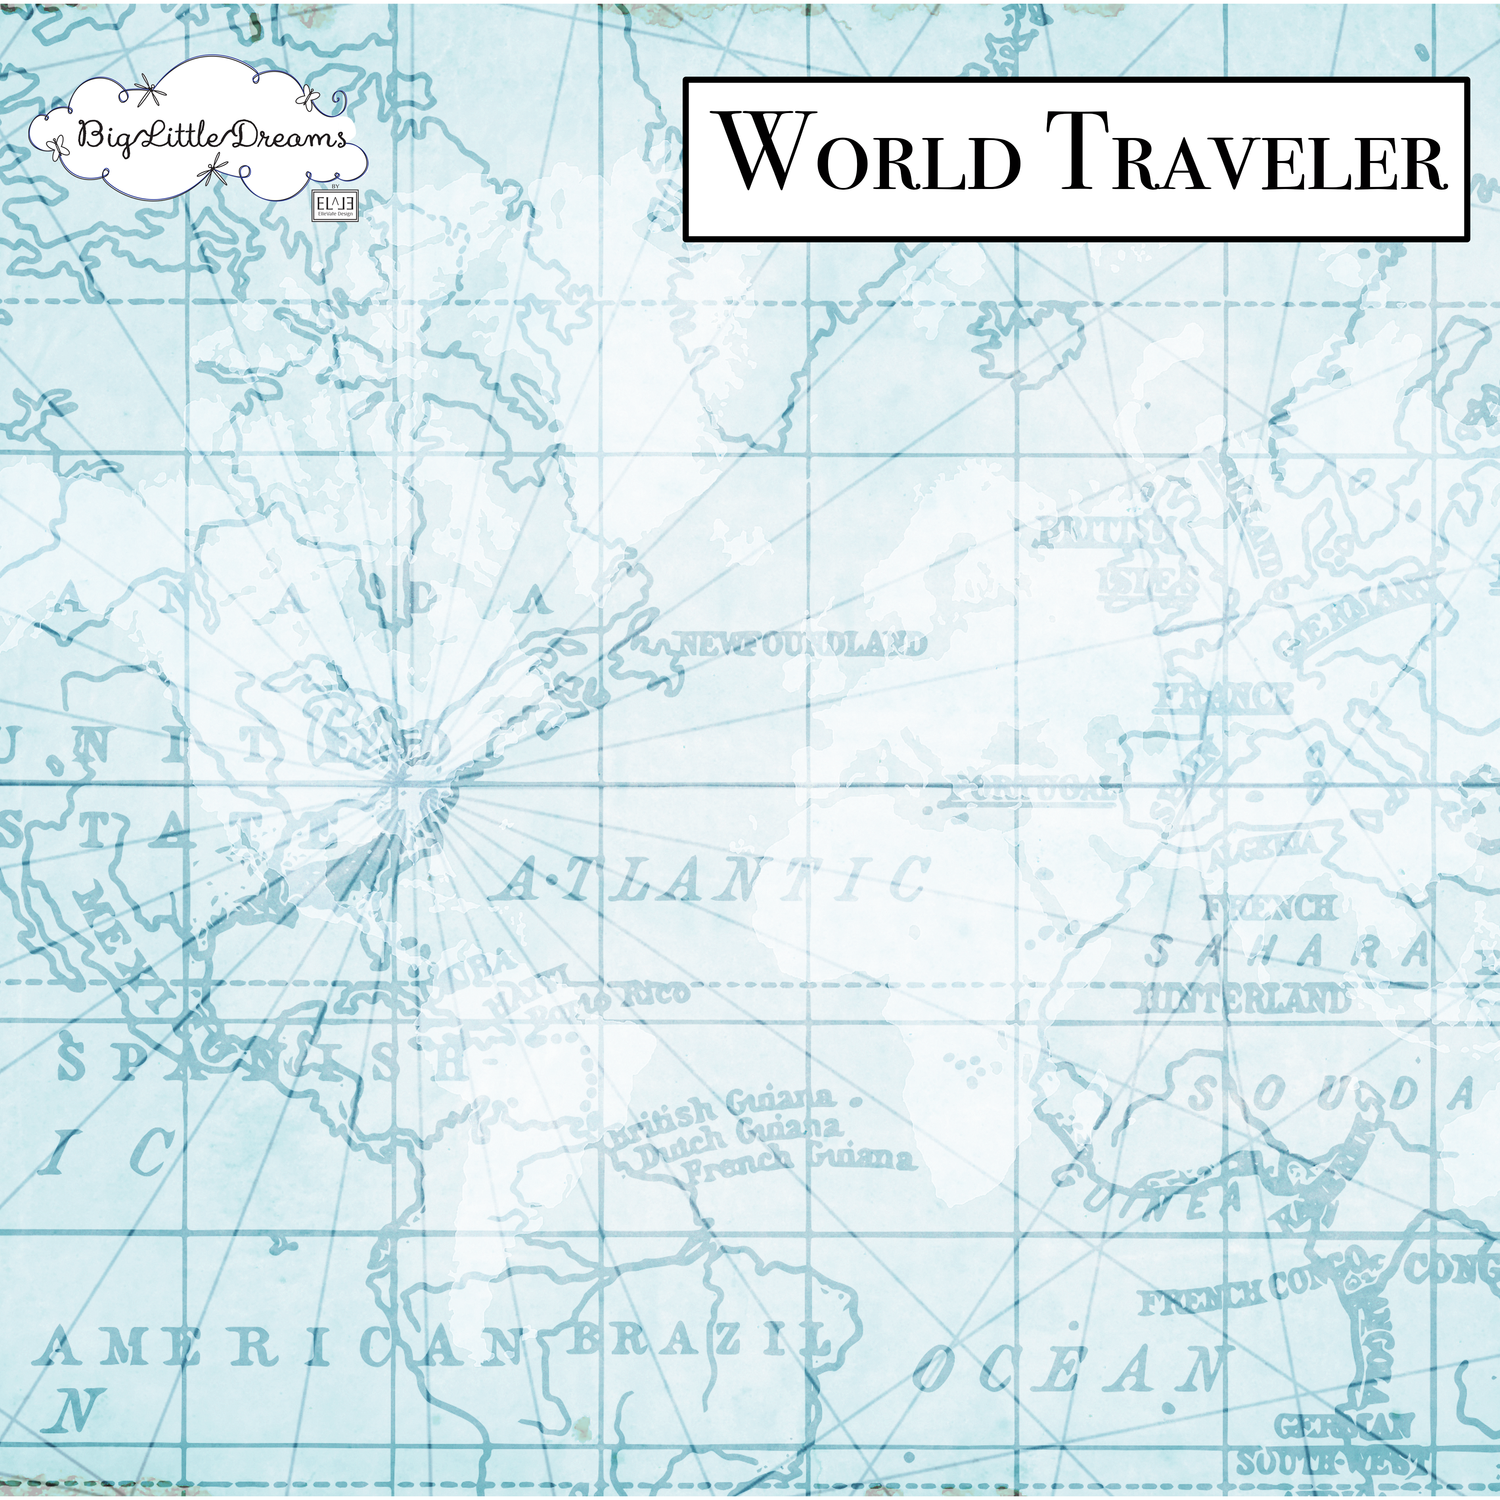 A World Traveler